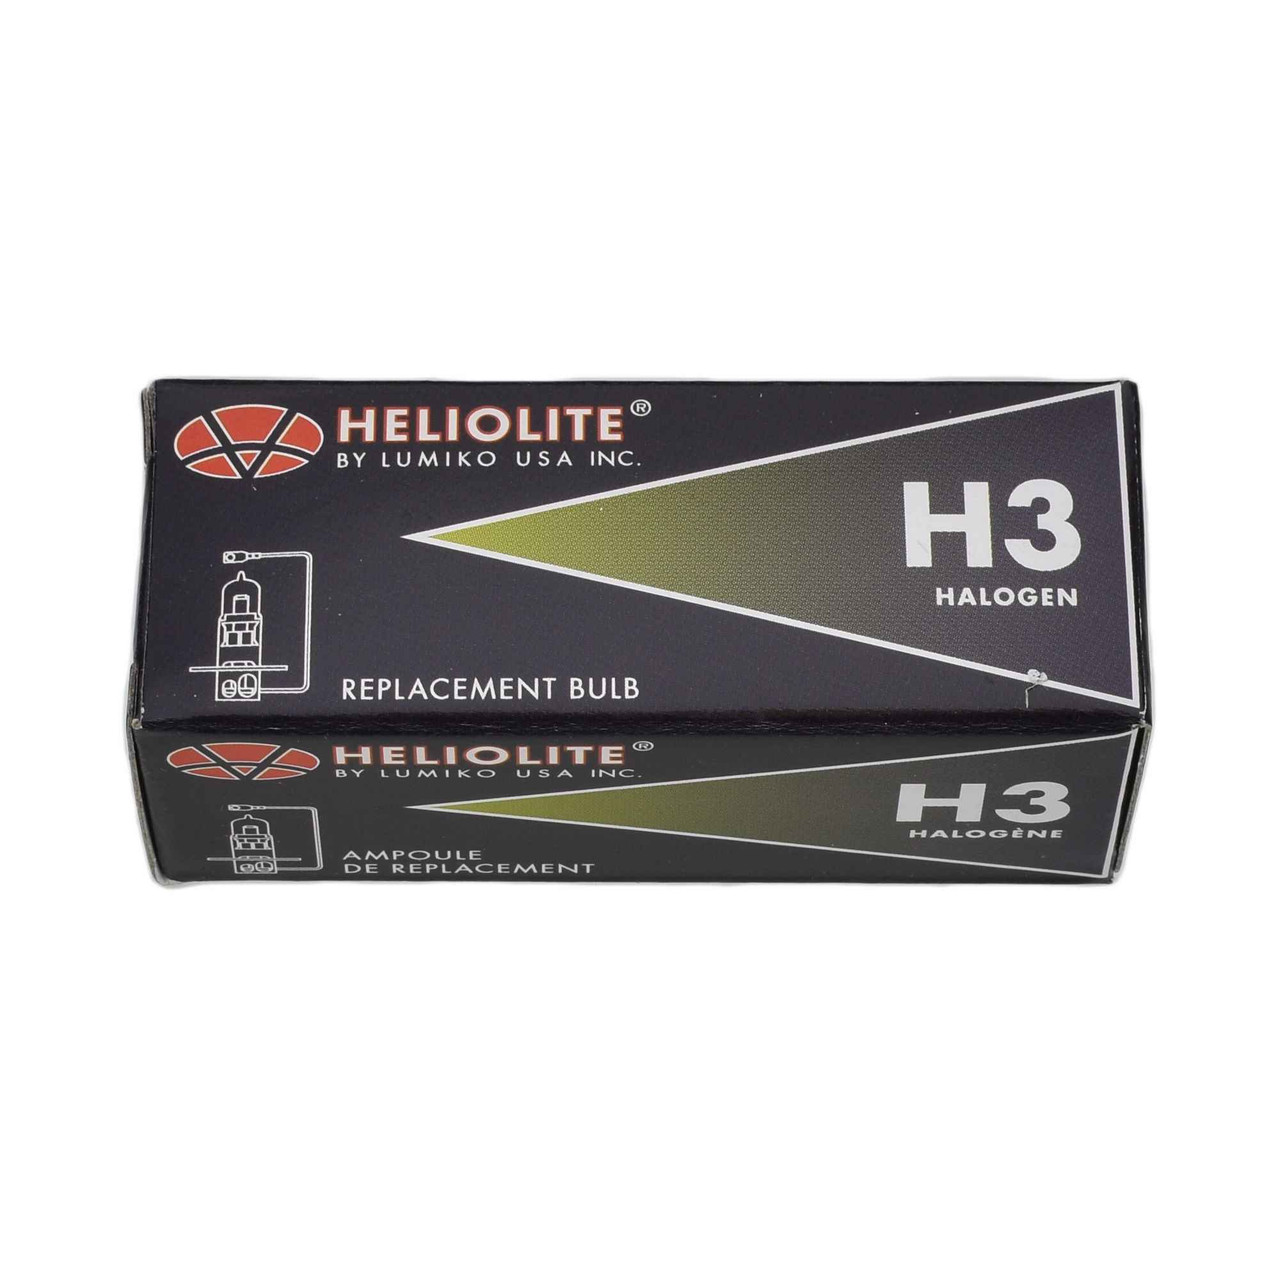 H3 Halogen Running Light Bulb - 12v 55w